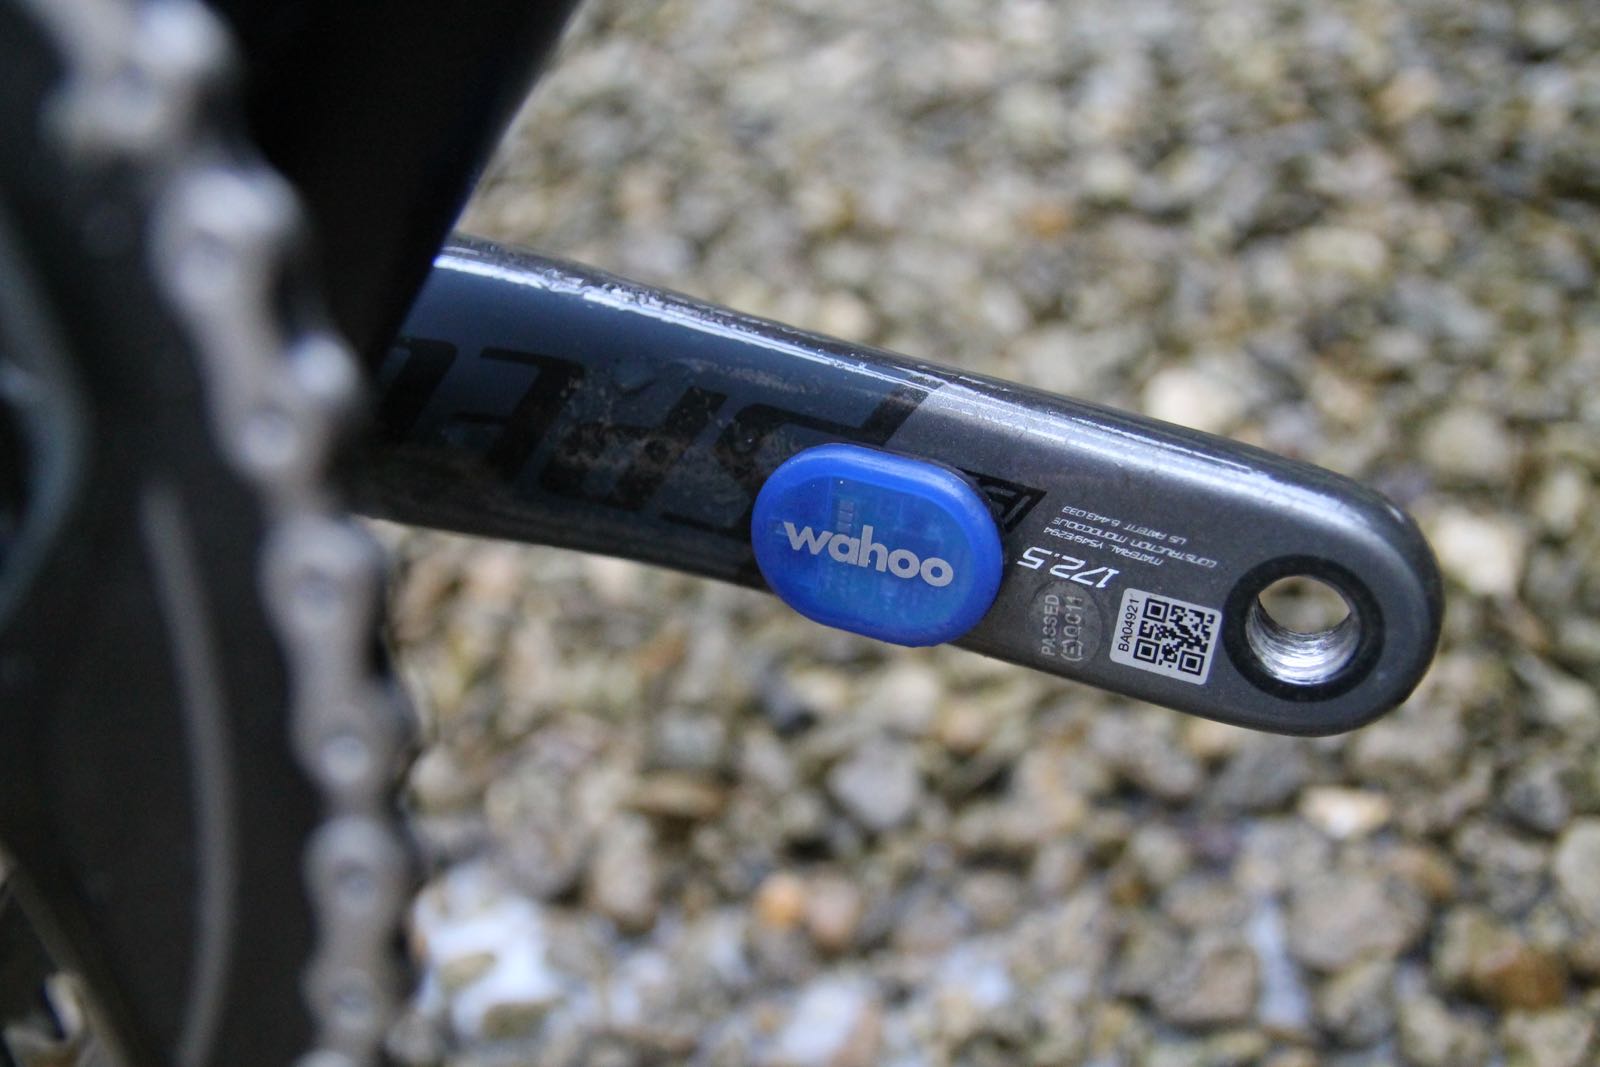 wahoo bike cadence sensor